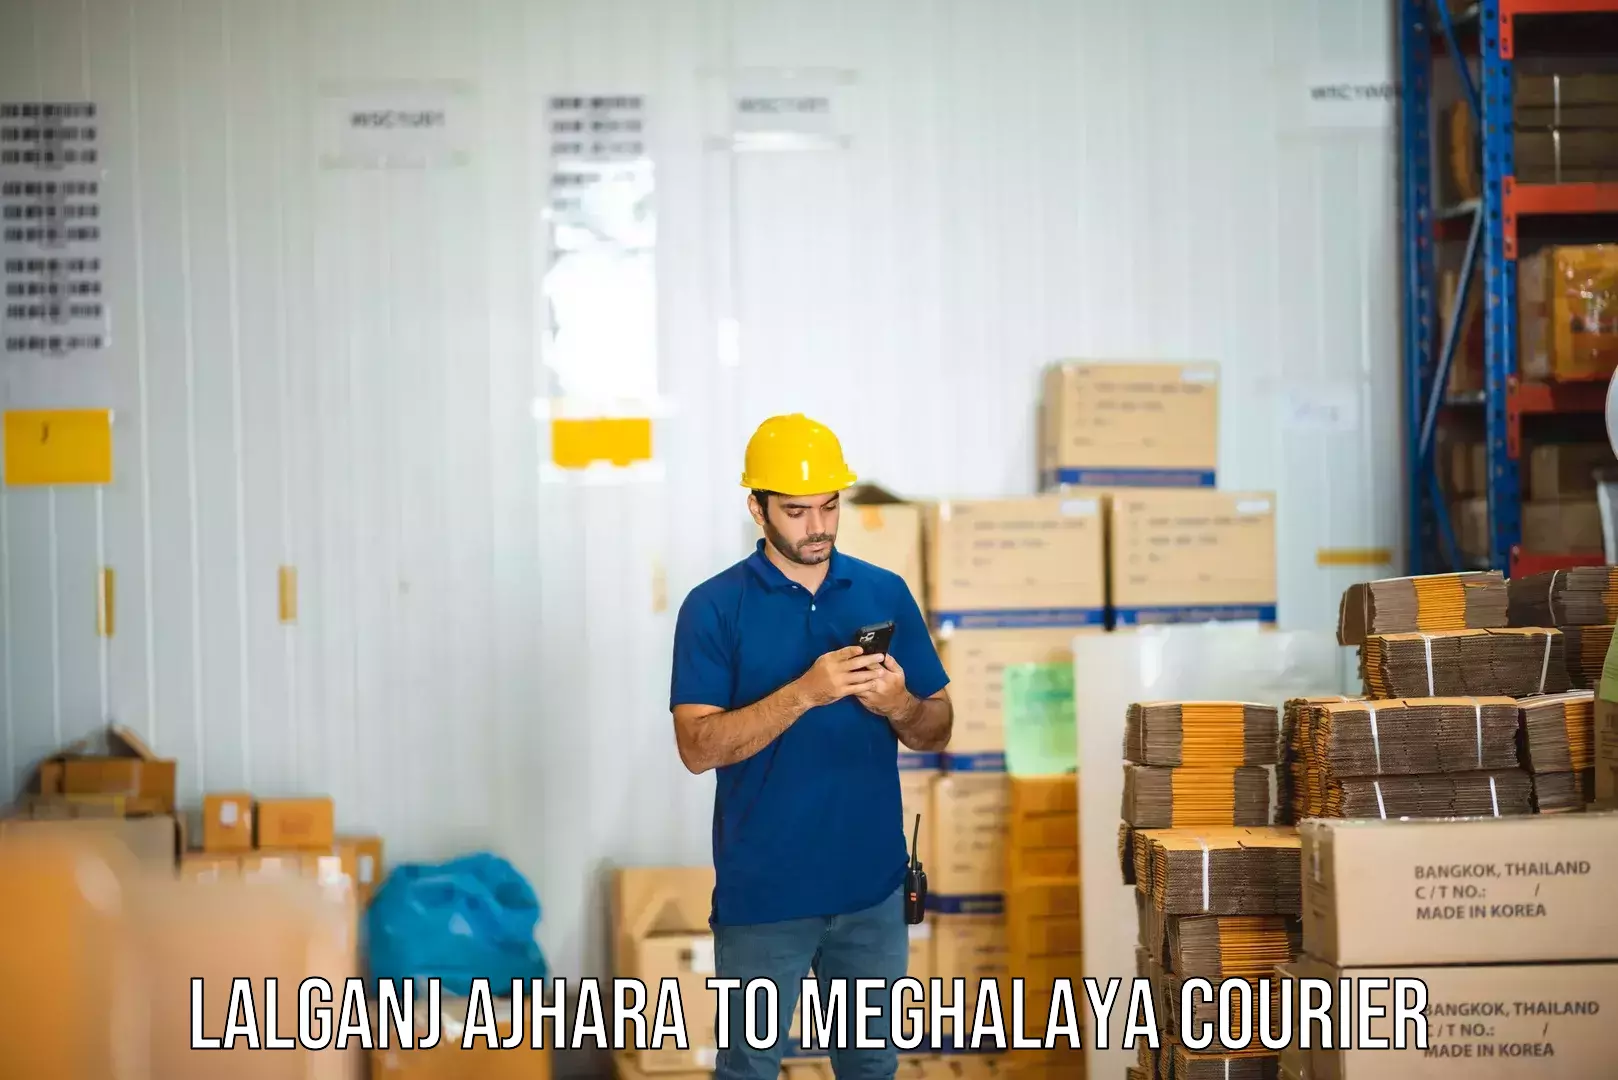 Regular parcel service Lalganj Ajhara to Meghalaya